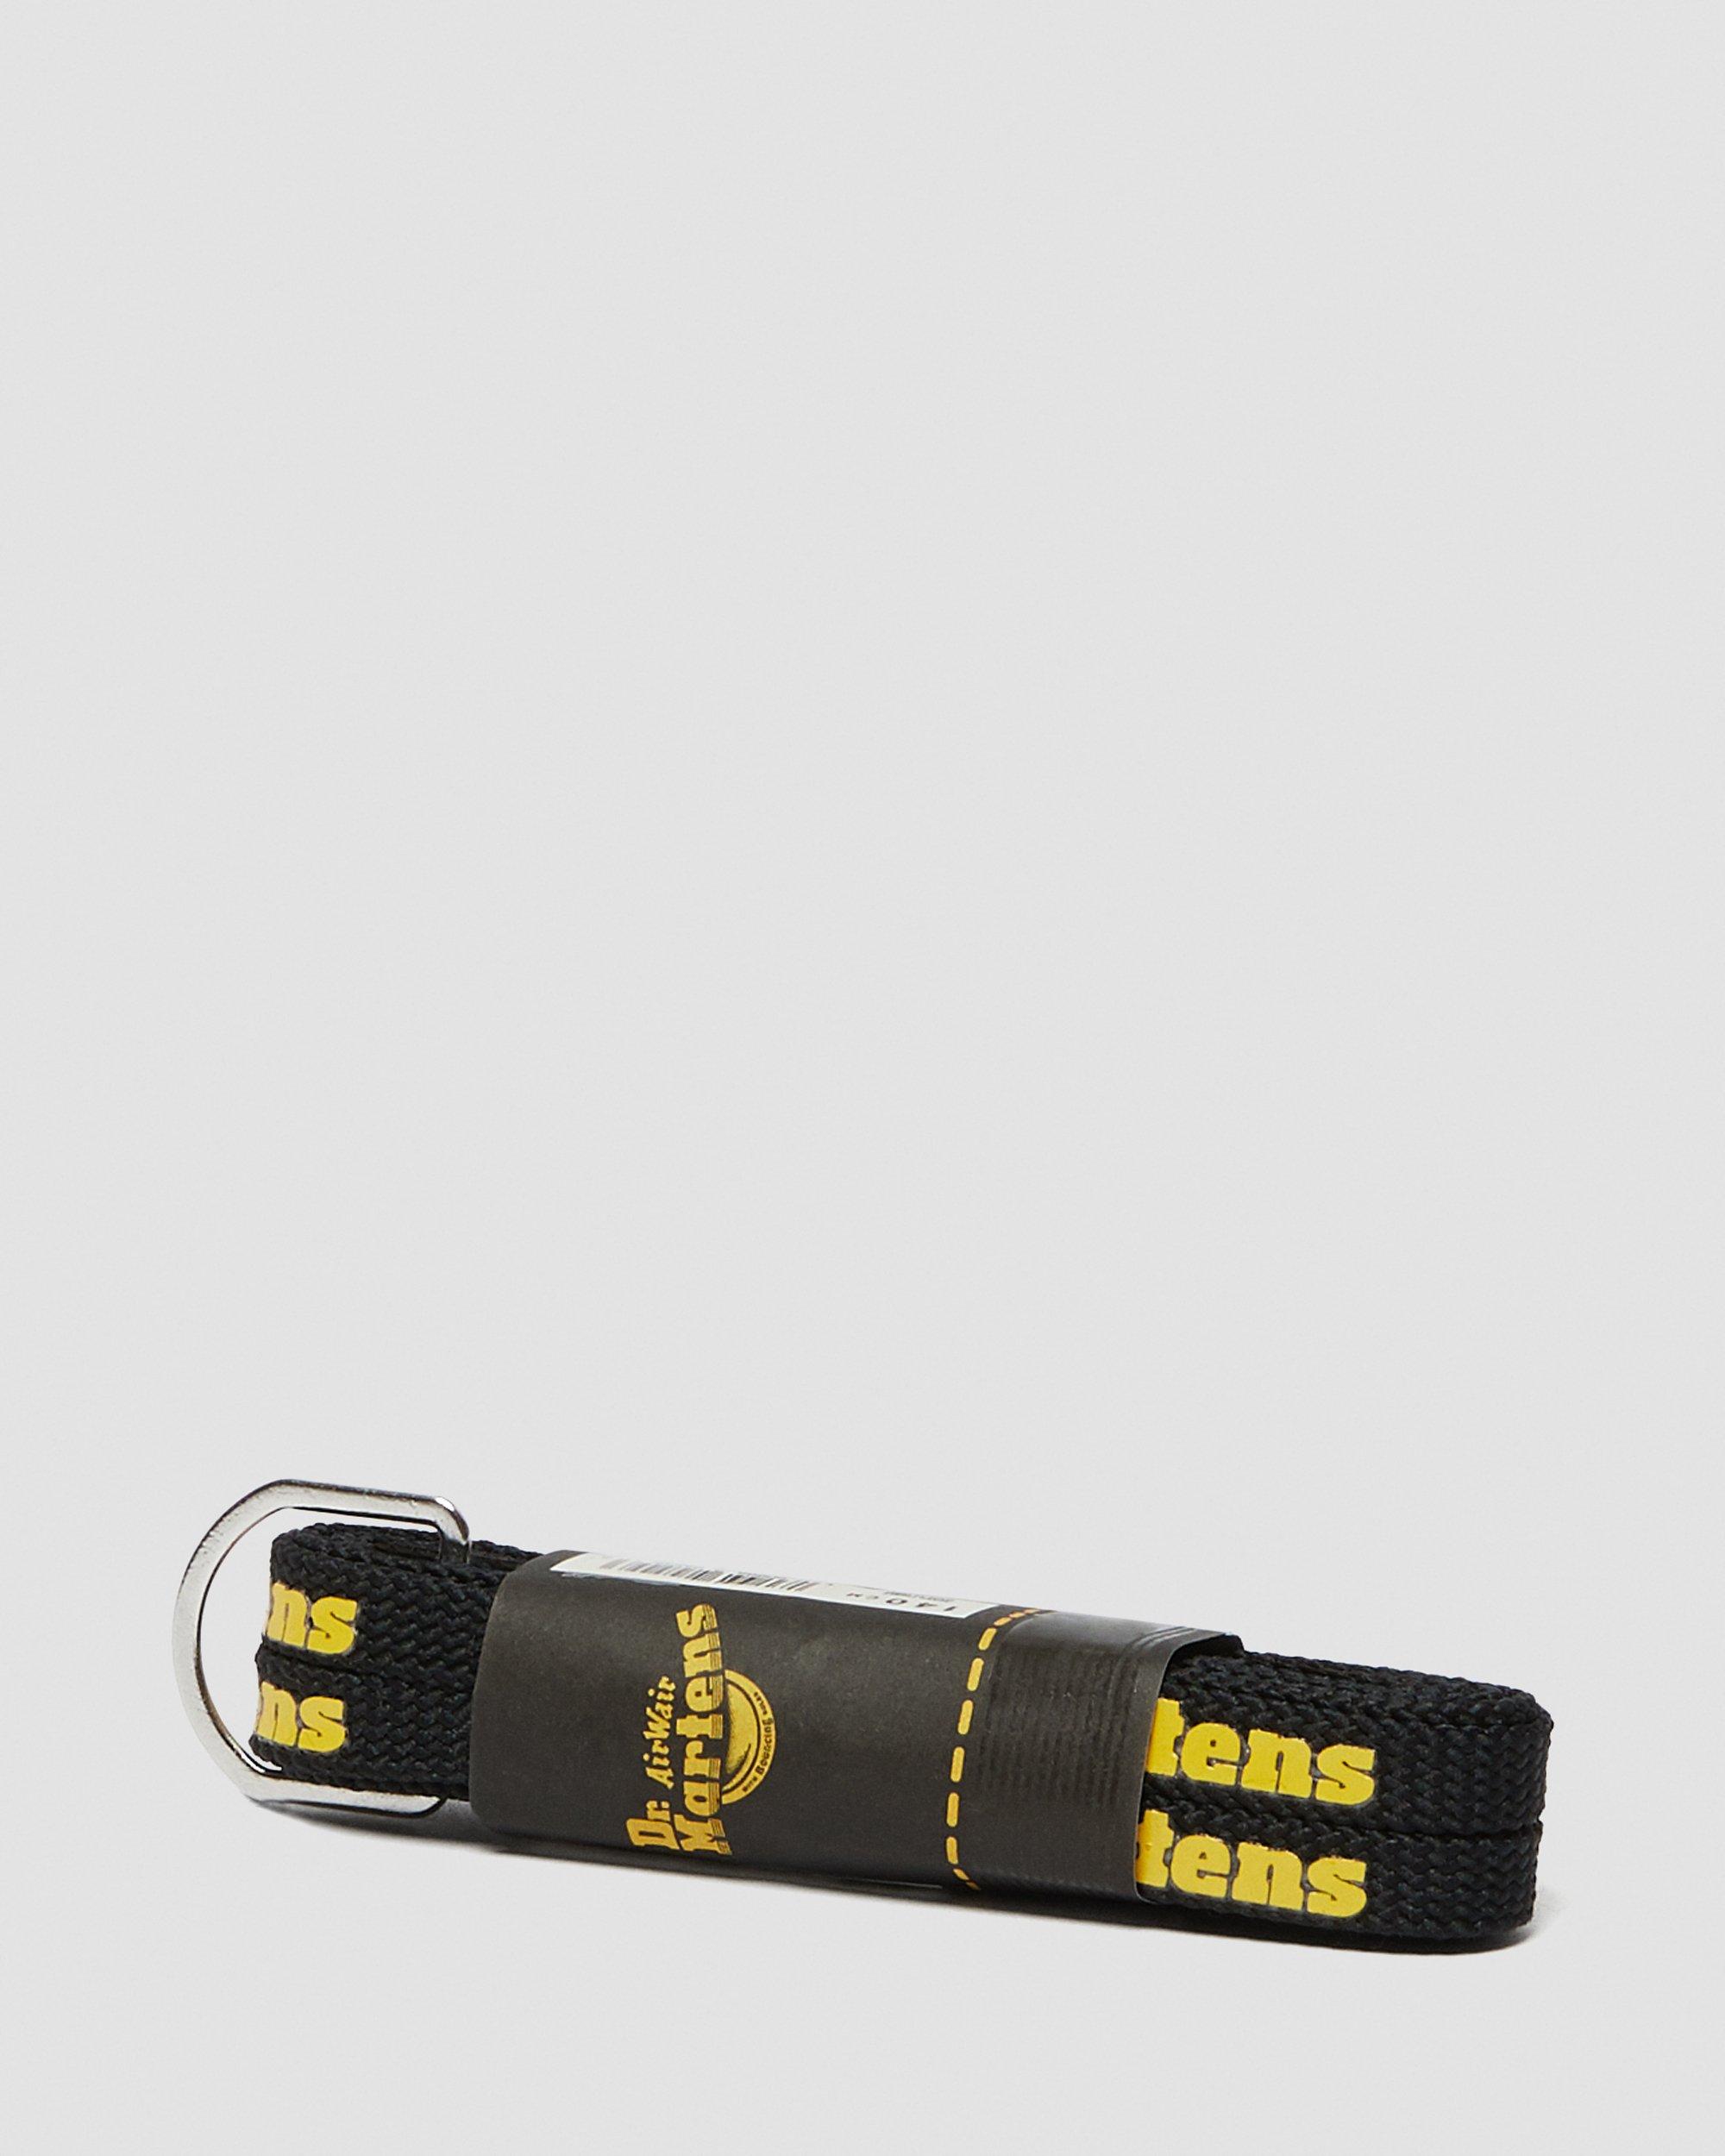 140cm Black/Yellow Logo Lace (8-10 eye shoe)